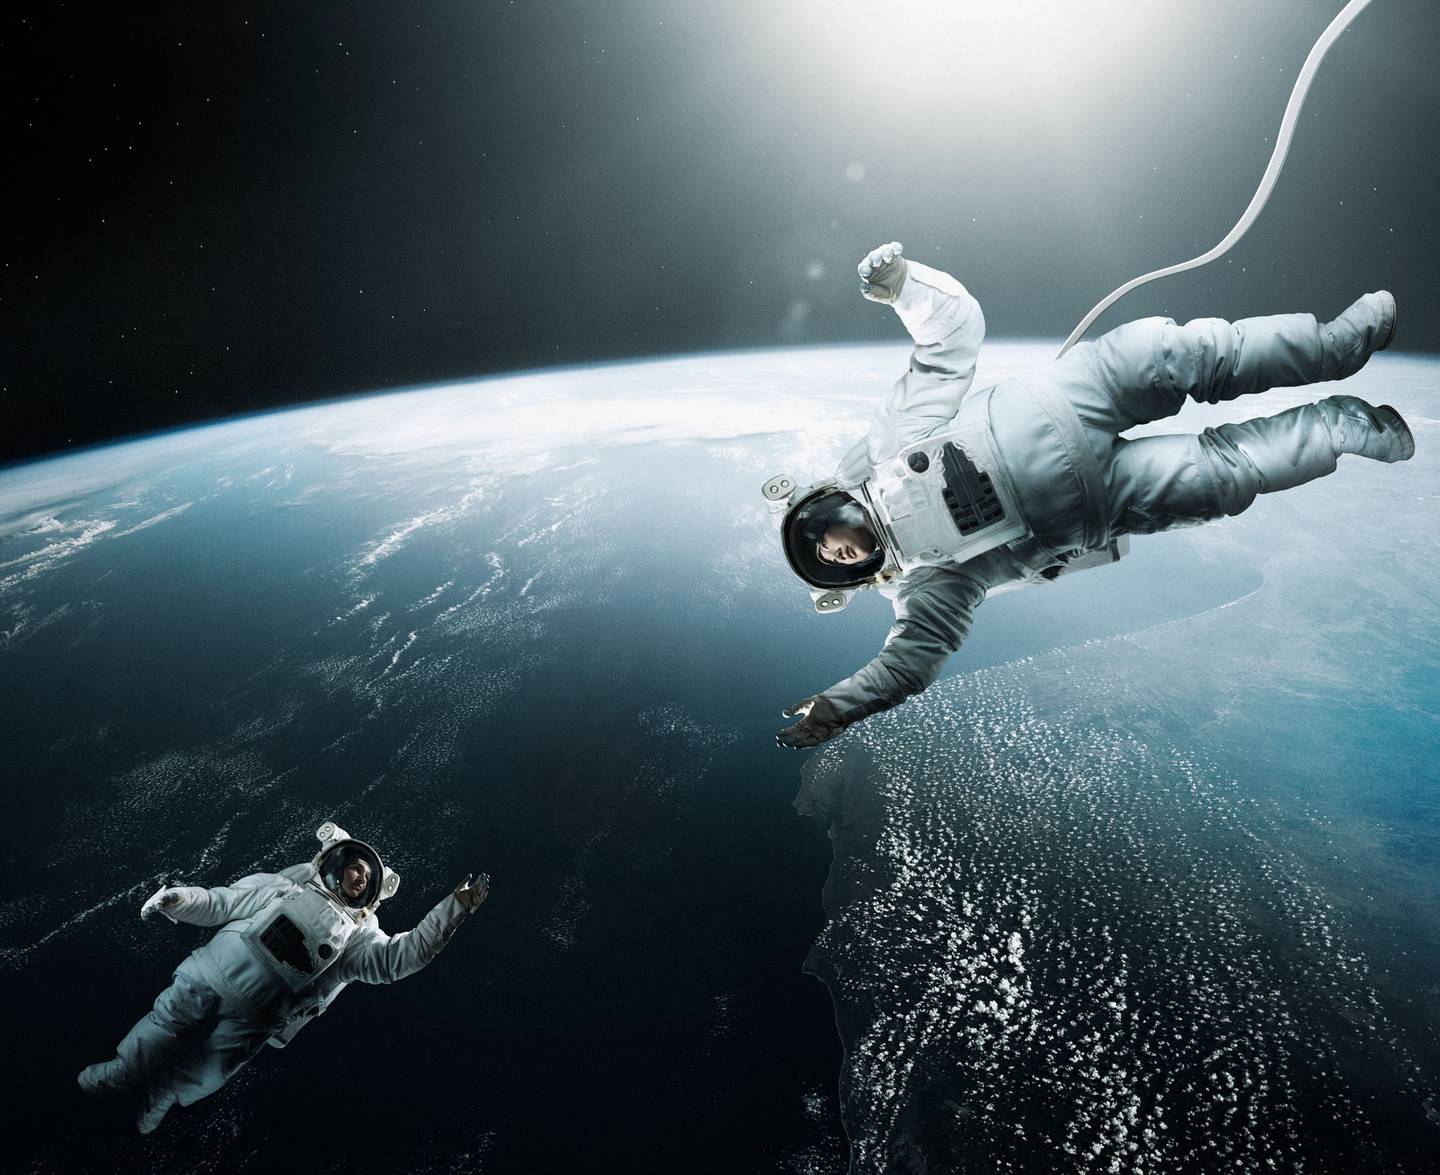 Imagen genérica de dos astronautas en el espacio, con la Tierra de fondo.